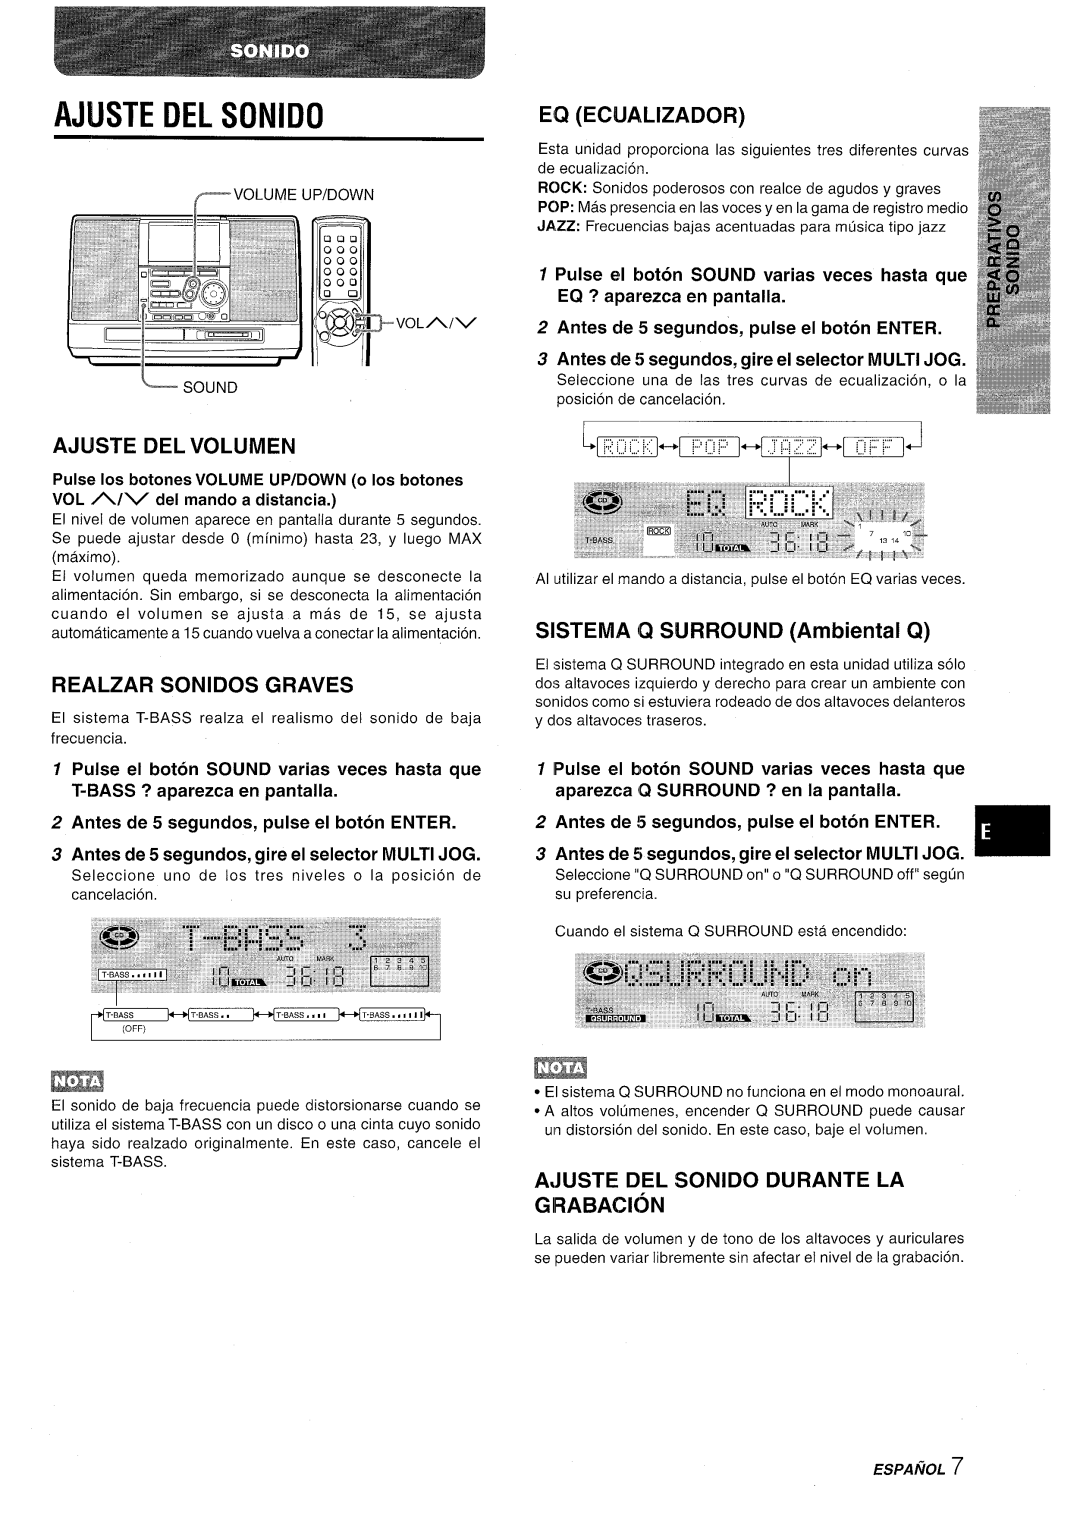 Aiwa CSD-MD50 manual Ajuste Del Sonido, Ajijste Del Volumen, Realzar Sonidos Graves, SISTEMA Q SURROUND Ambiental Q 